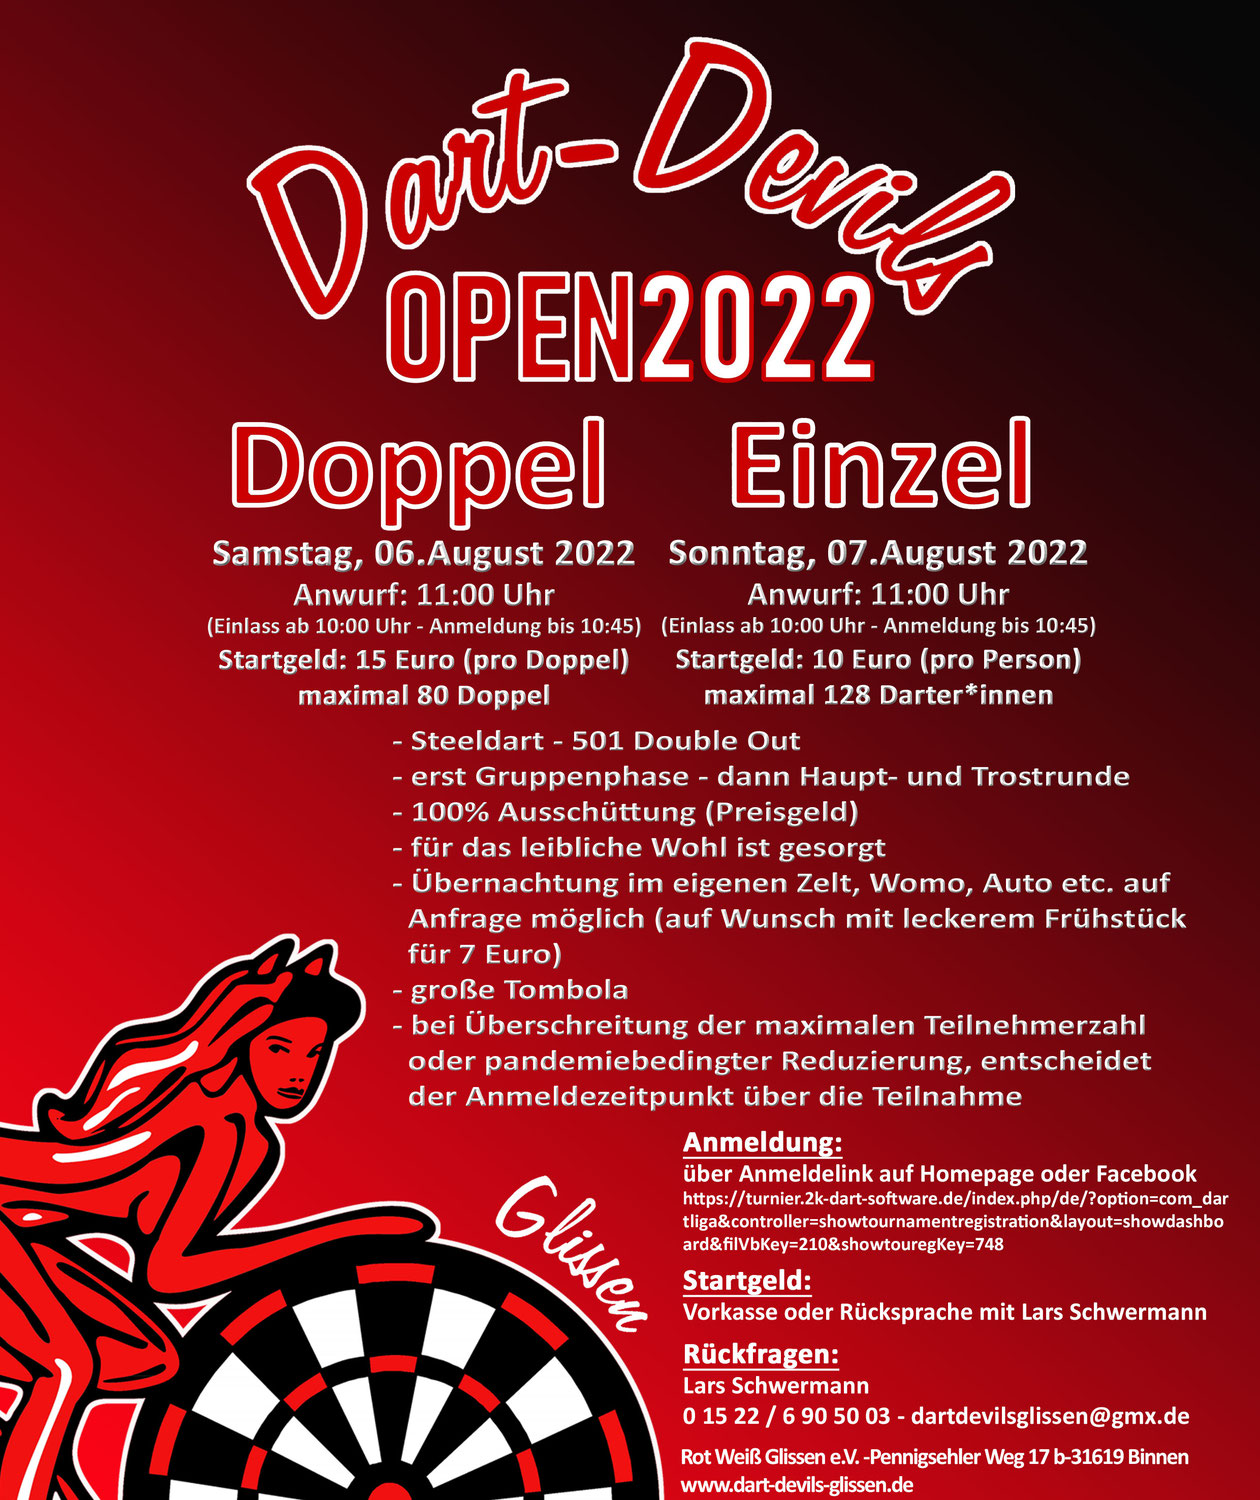 UPDATE Dart-Devils OPEN 2022